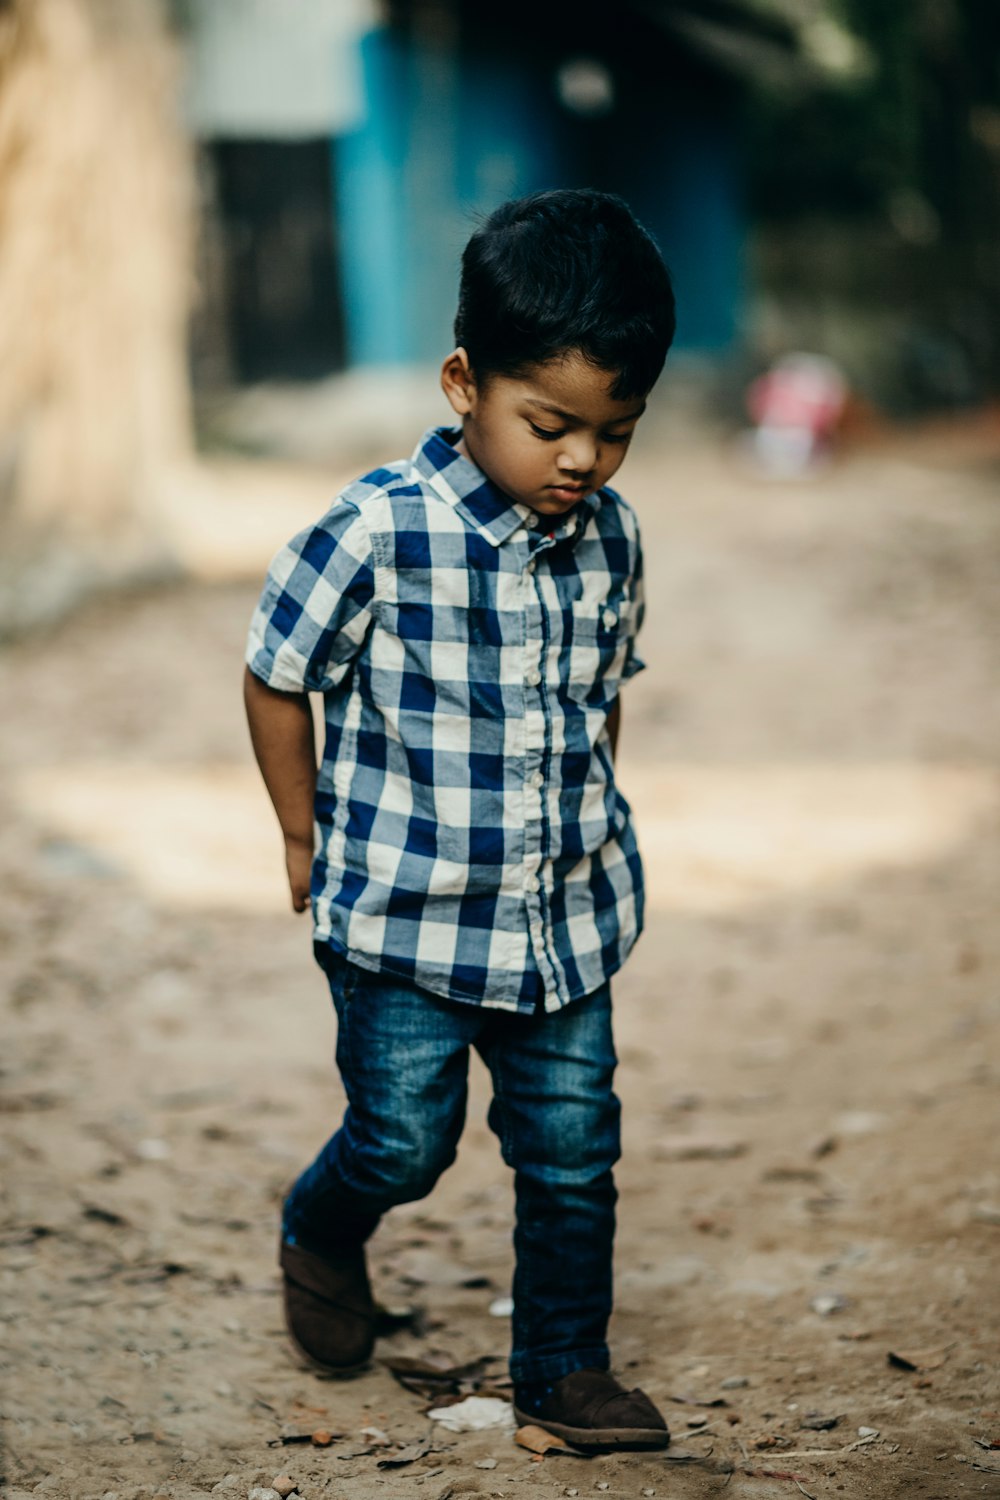 Photographie sélective de mise au point d’un garçon en chemise boutonnée à carreaux bleu et blanc regardant vers le bas